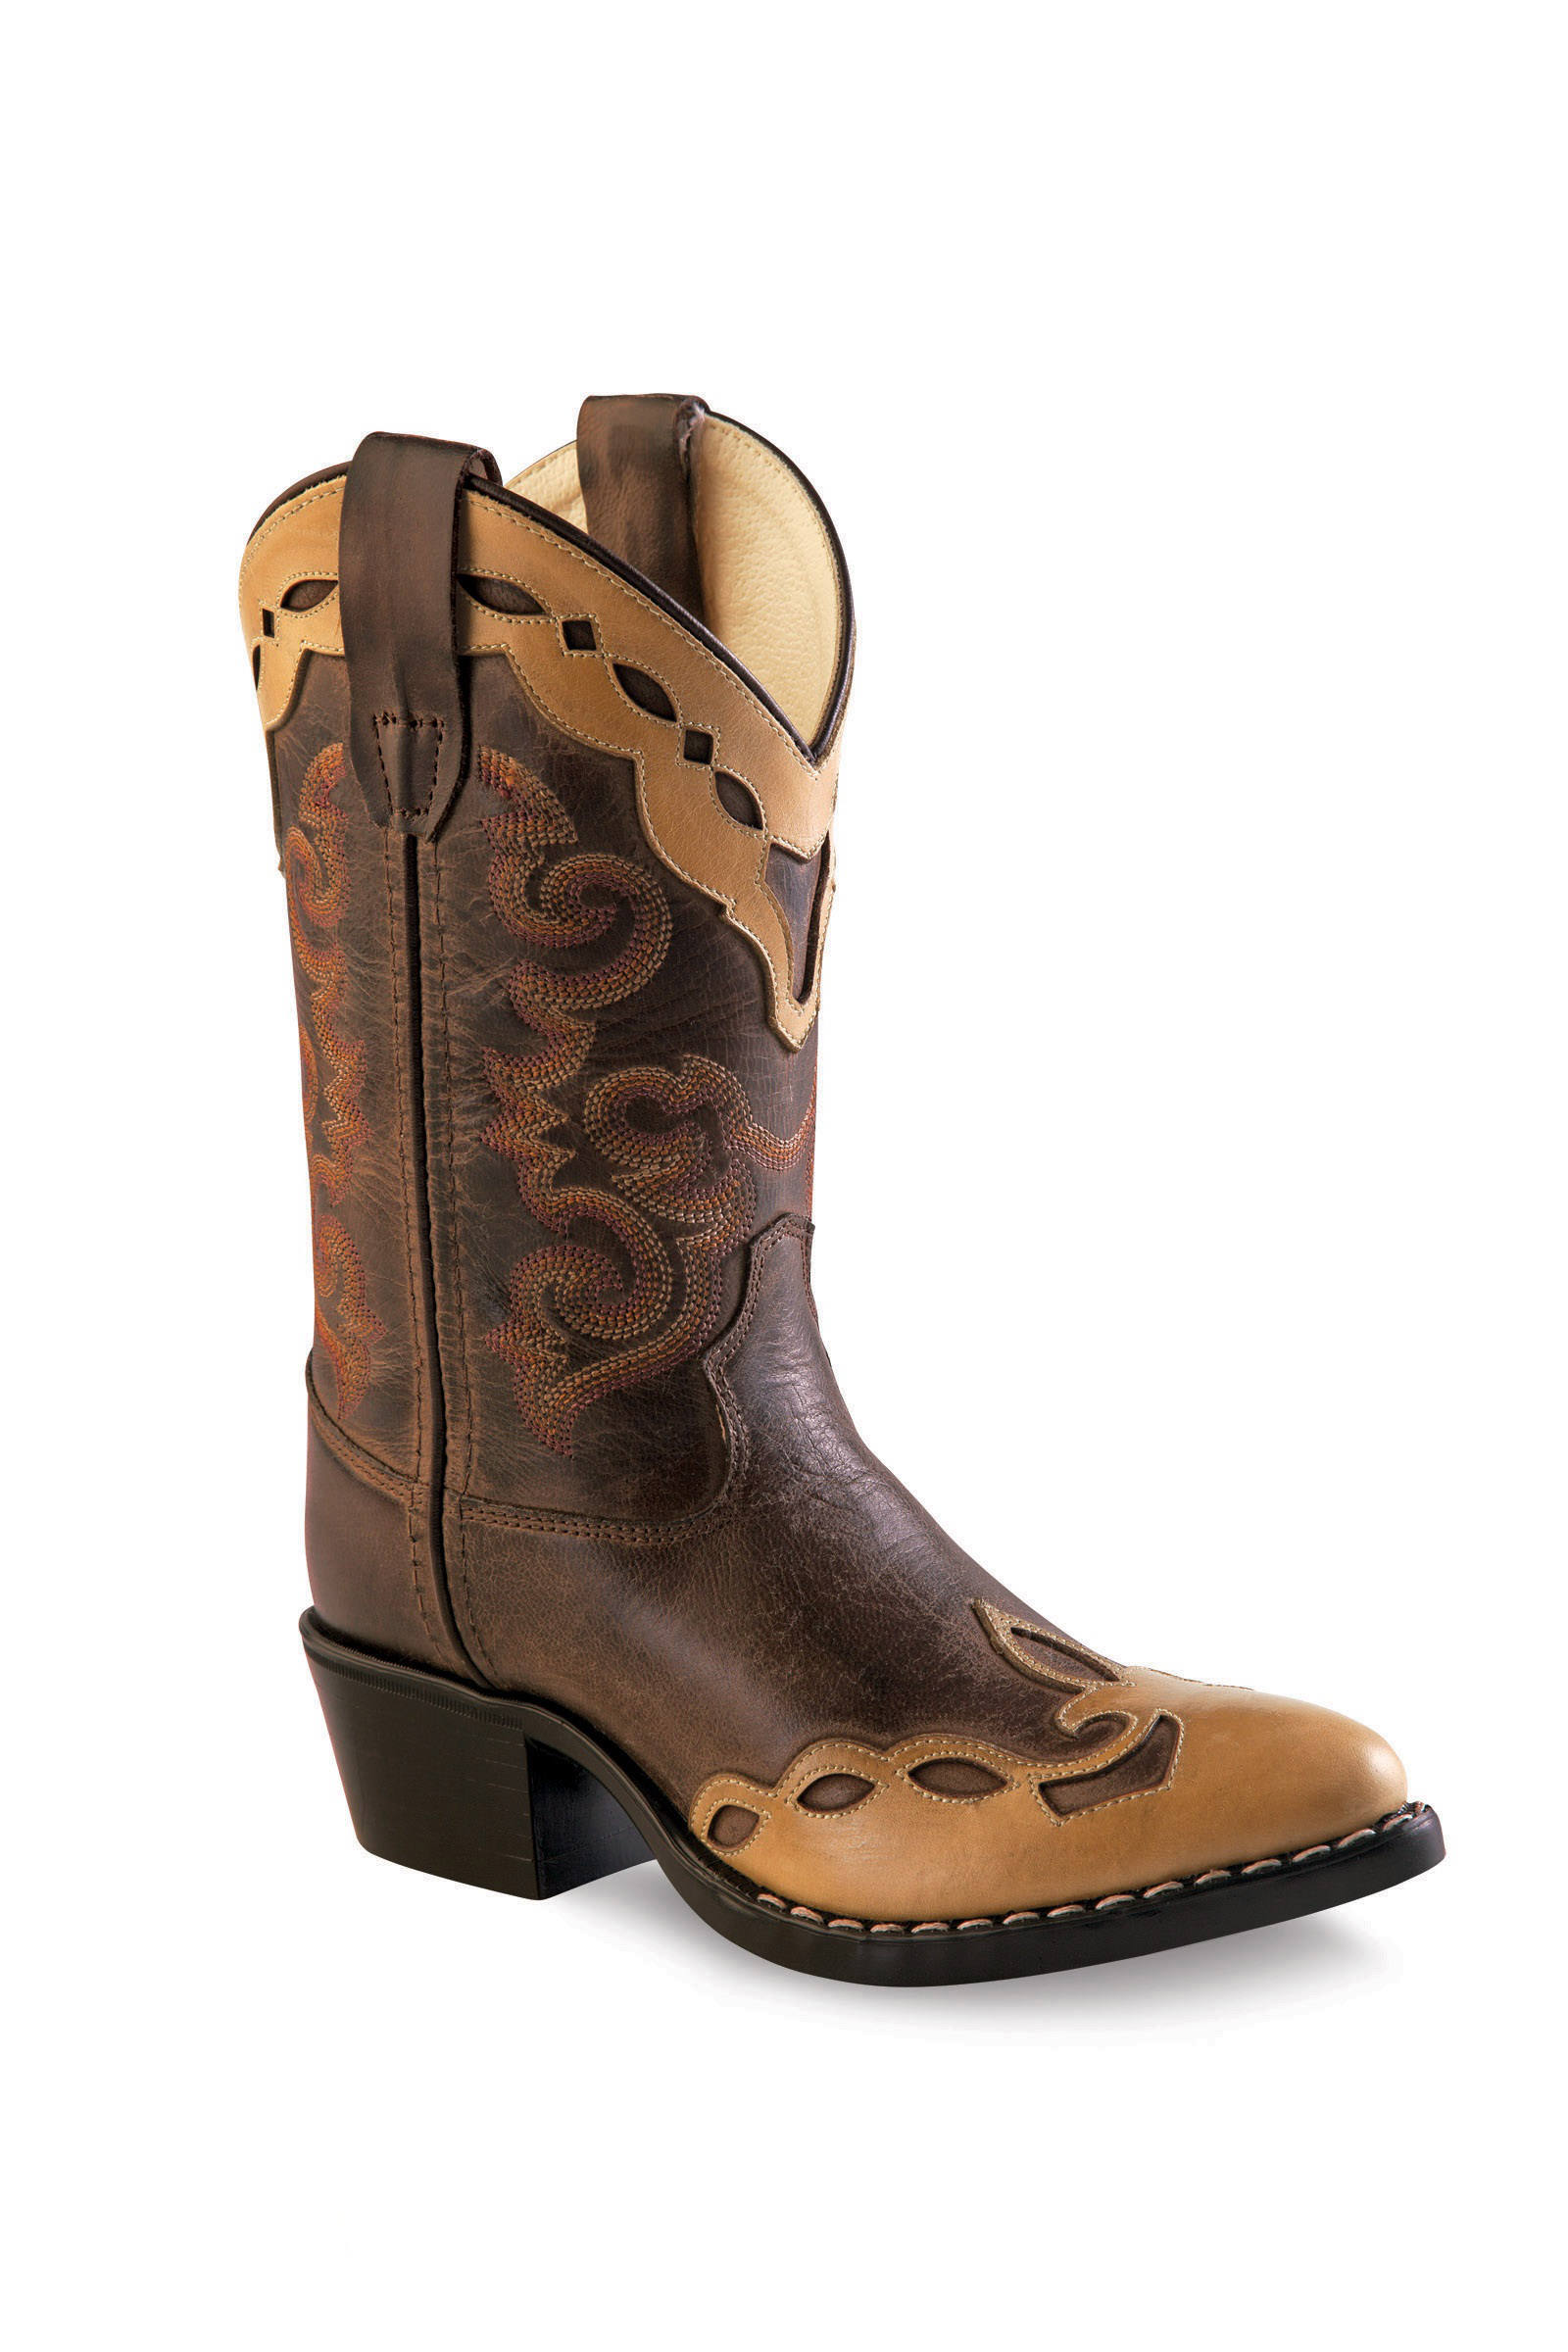 Cowboy boots for children 8159, brown-cream